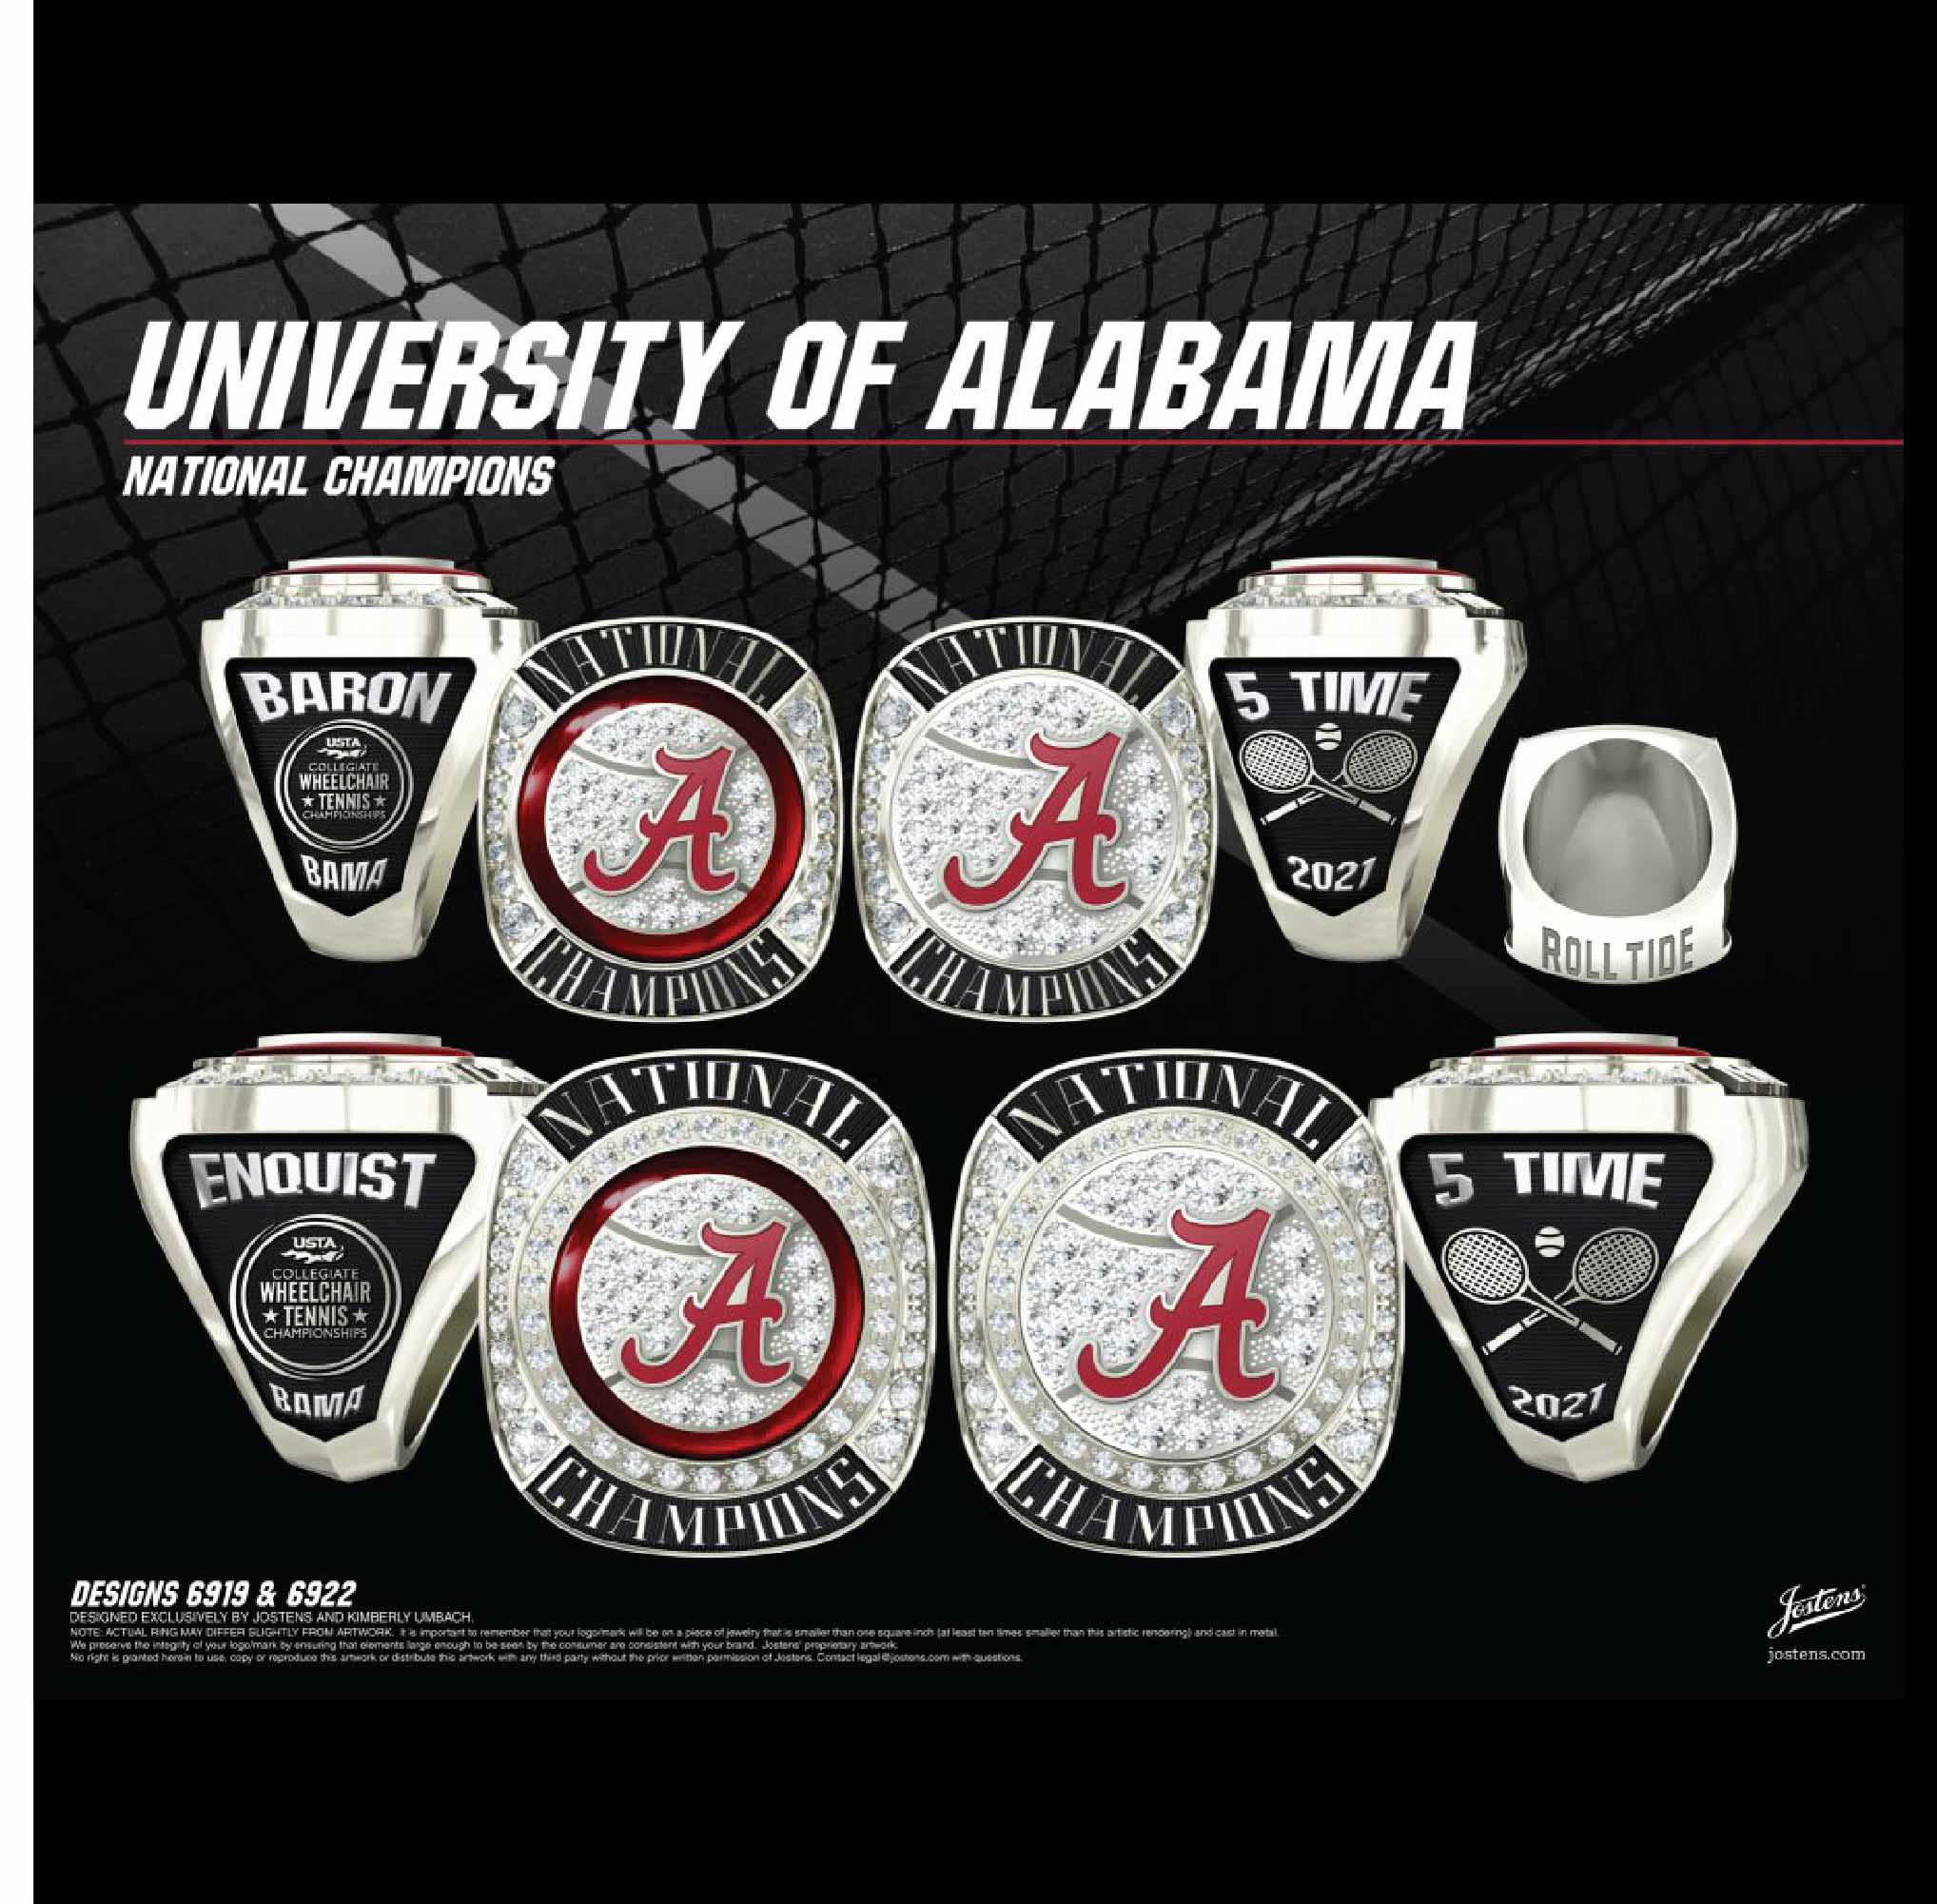 University of Alabama Men's Tennis 2021 National Championship Ring